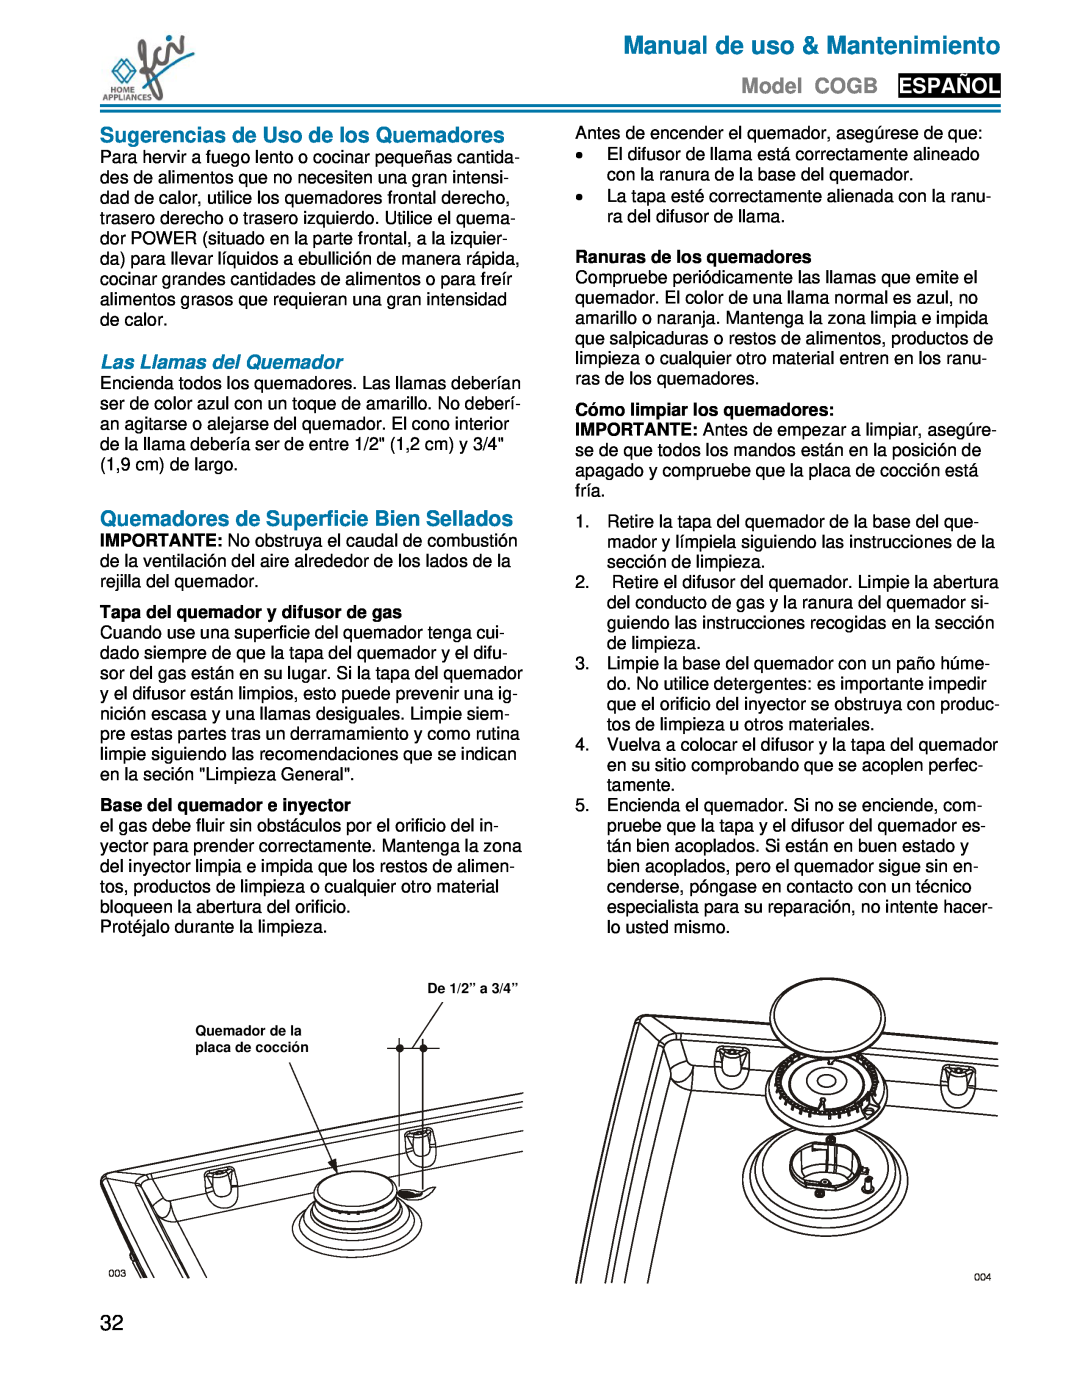 FCI Home Appliances COGB33062 manual Sugerencias de Uso de los Quemadores, Quemadores de Superficie Bien Sellados 